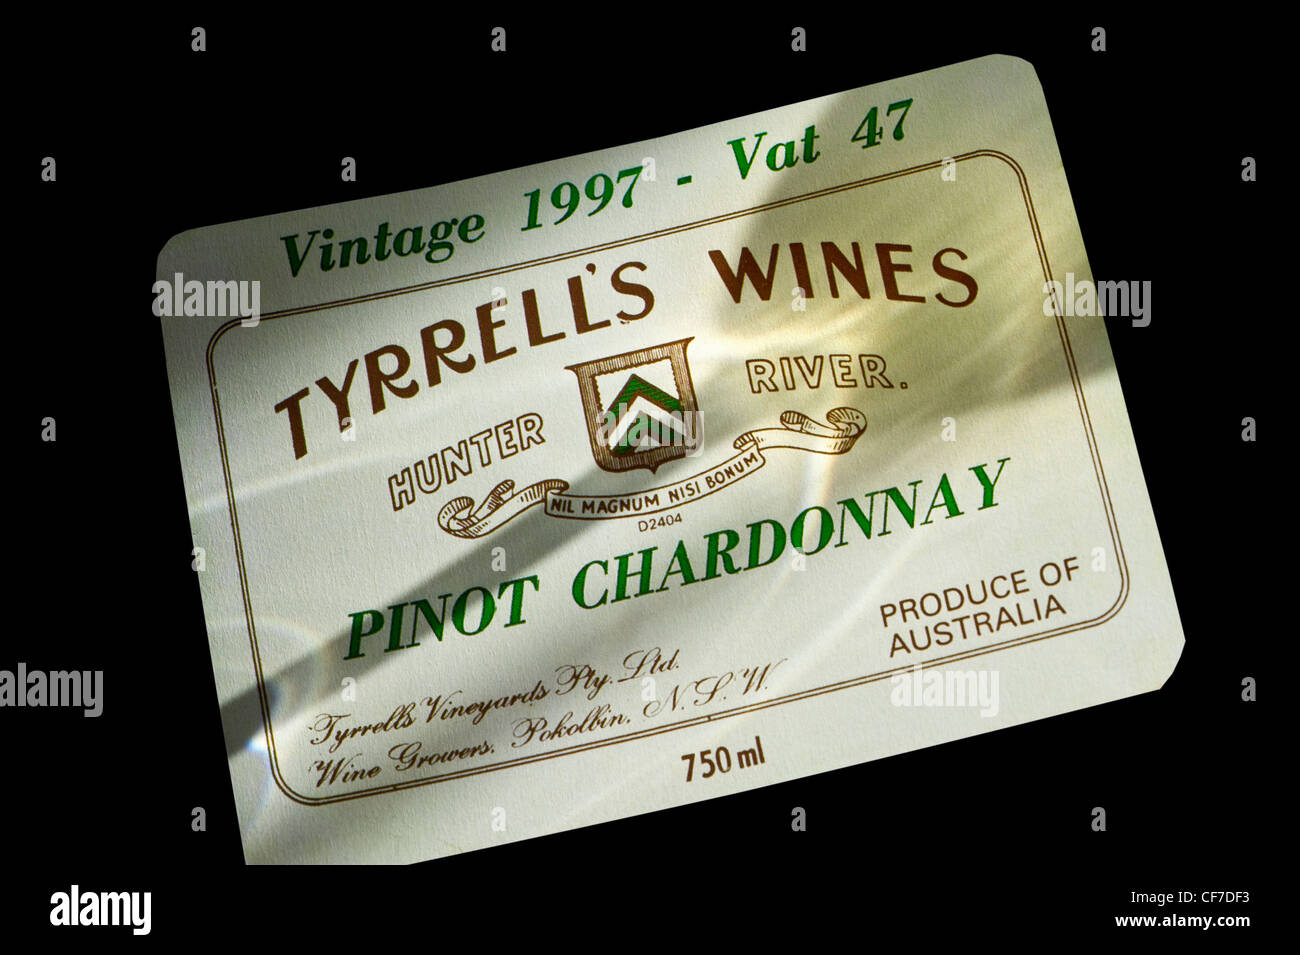 Ombre d'un verre de vin sur Vins de Tyrrell Pinot '' '' Chardnnay , étiquette bouteille vintage 1997, TVA 47, Hunter Valley Australie Banque D'Images